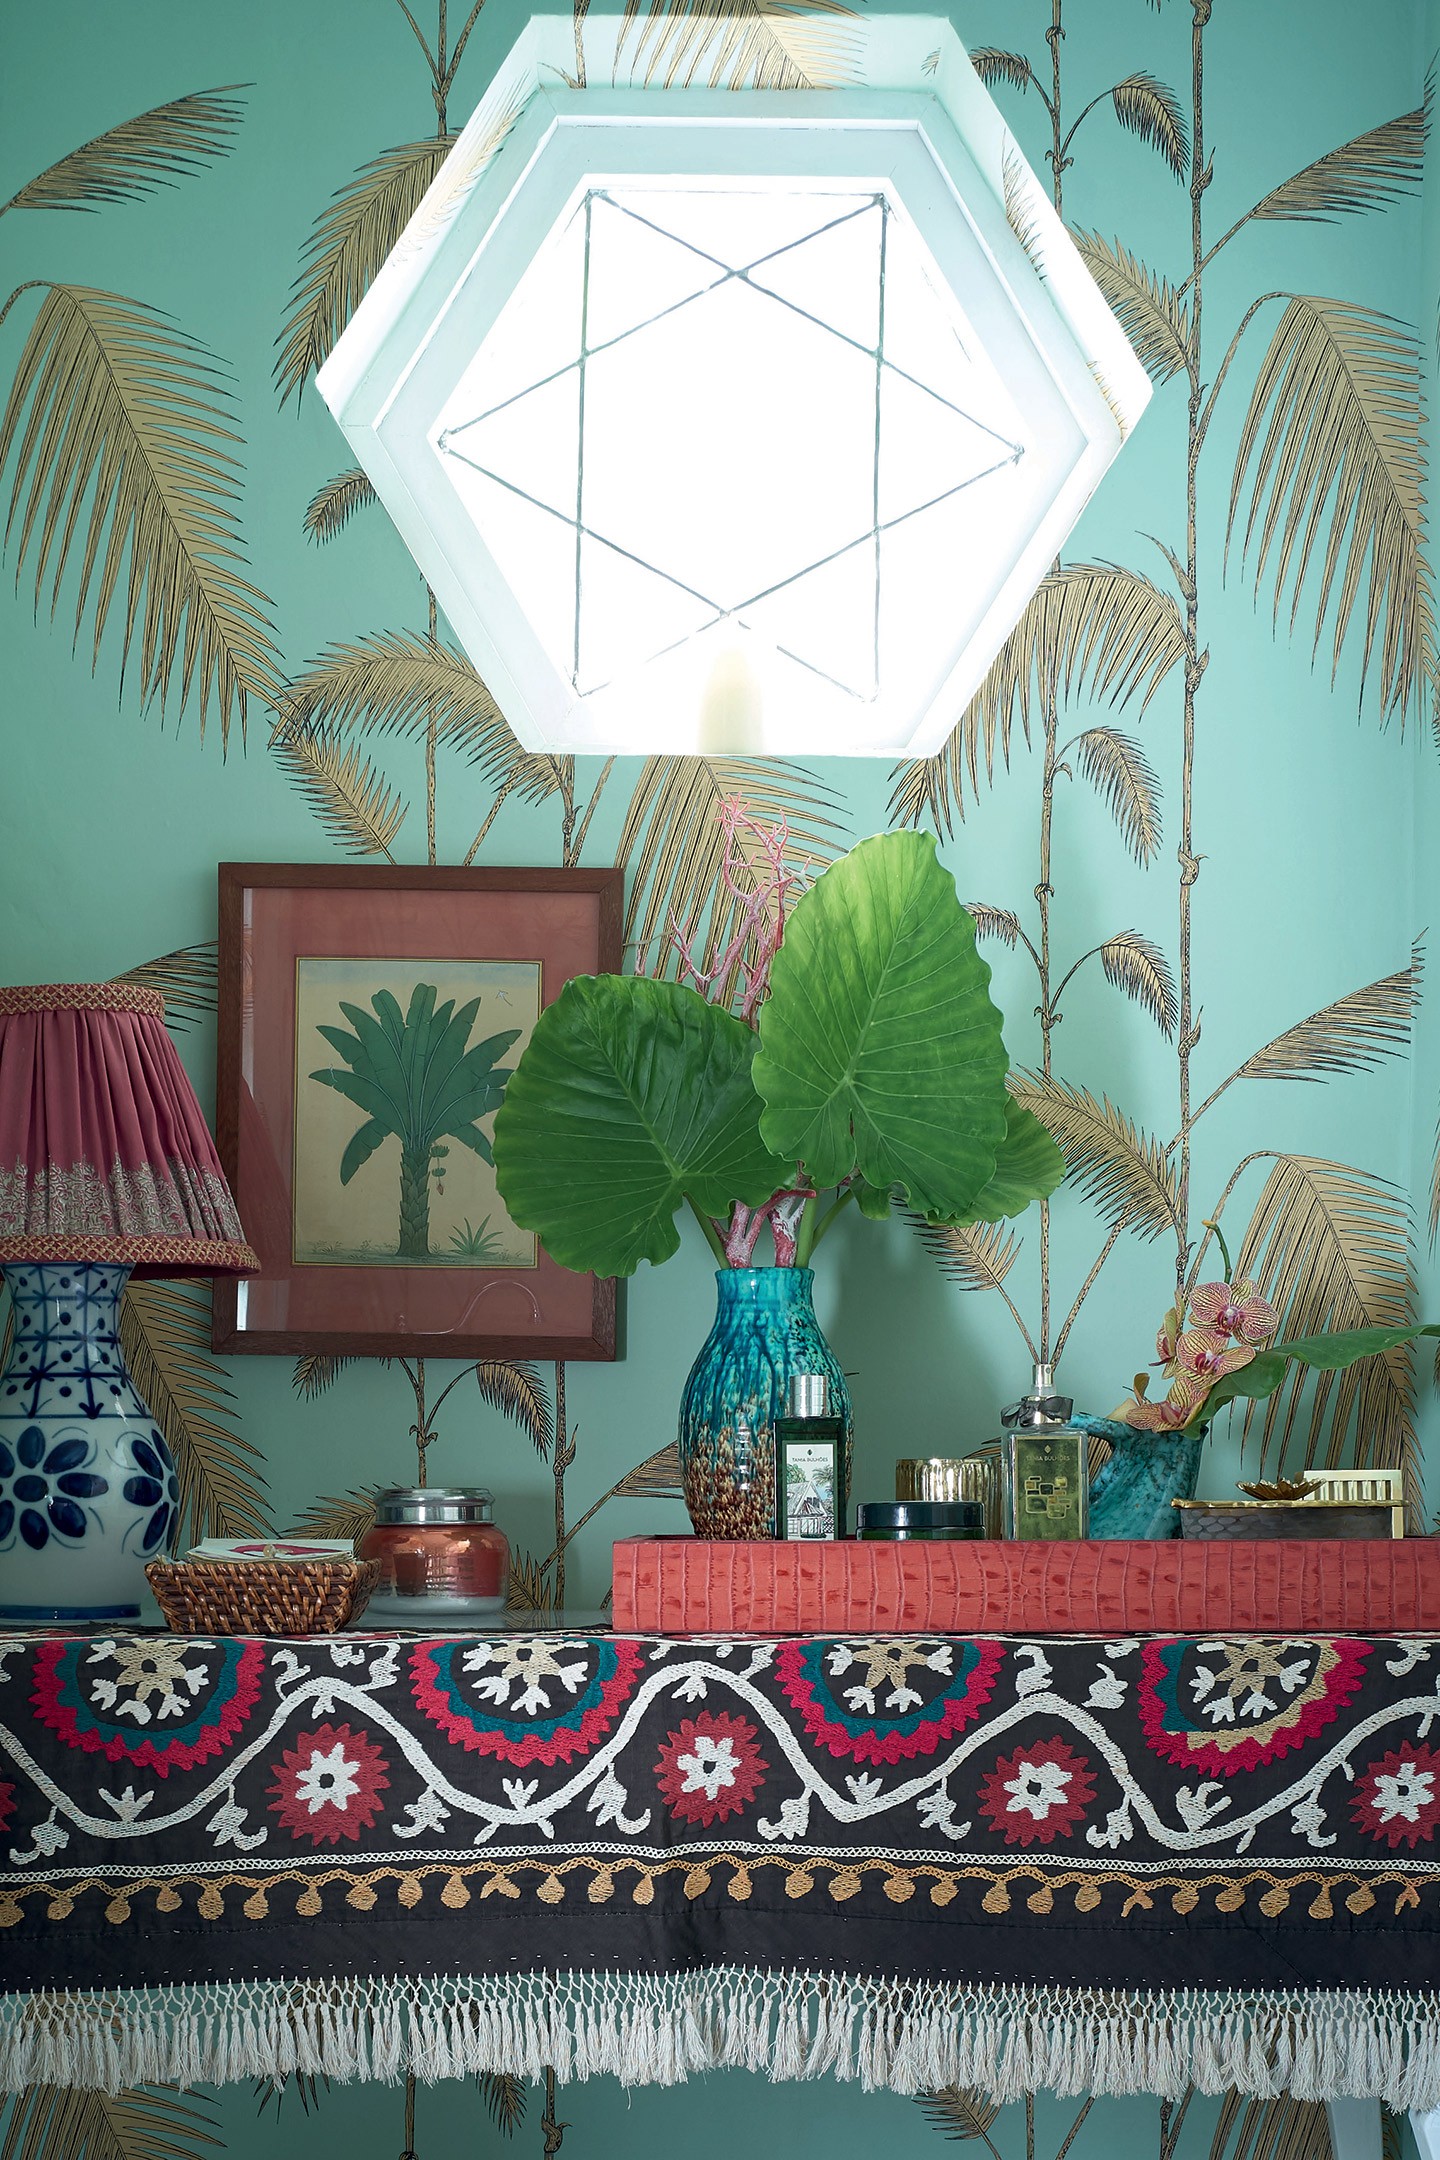 Em Miami, casa com decoração maximalista mistura cores, garimpos e arte (Foto: Björn Wallander/divulgação)